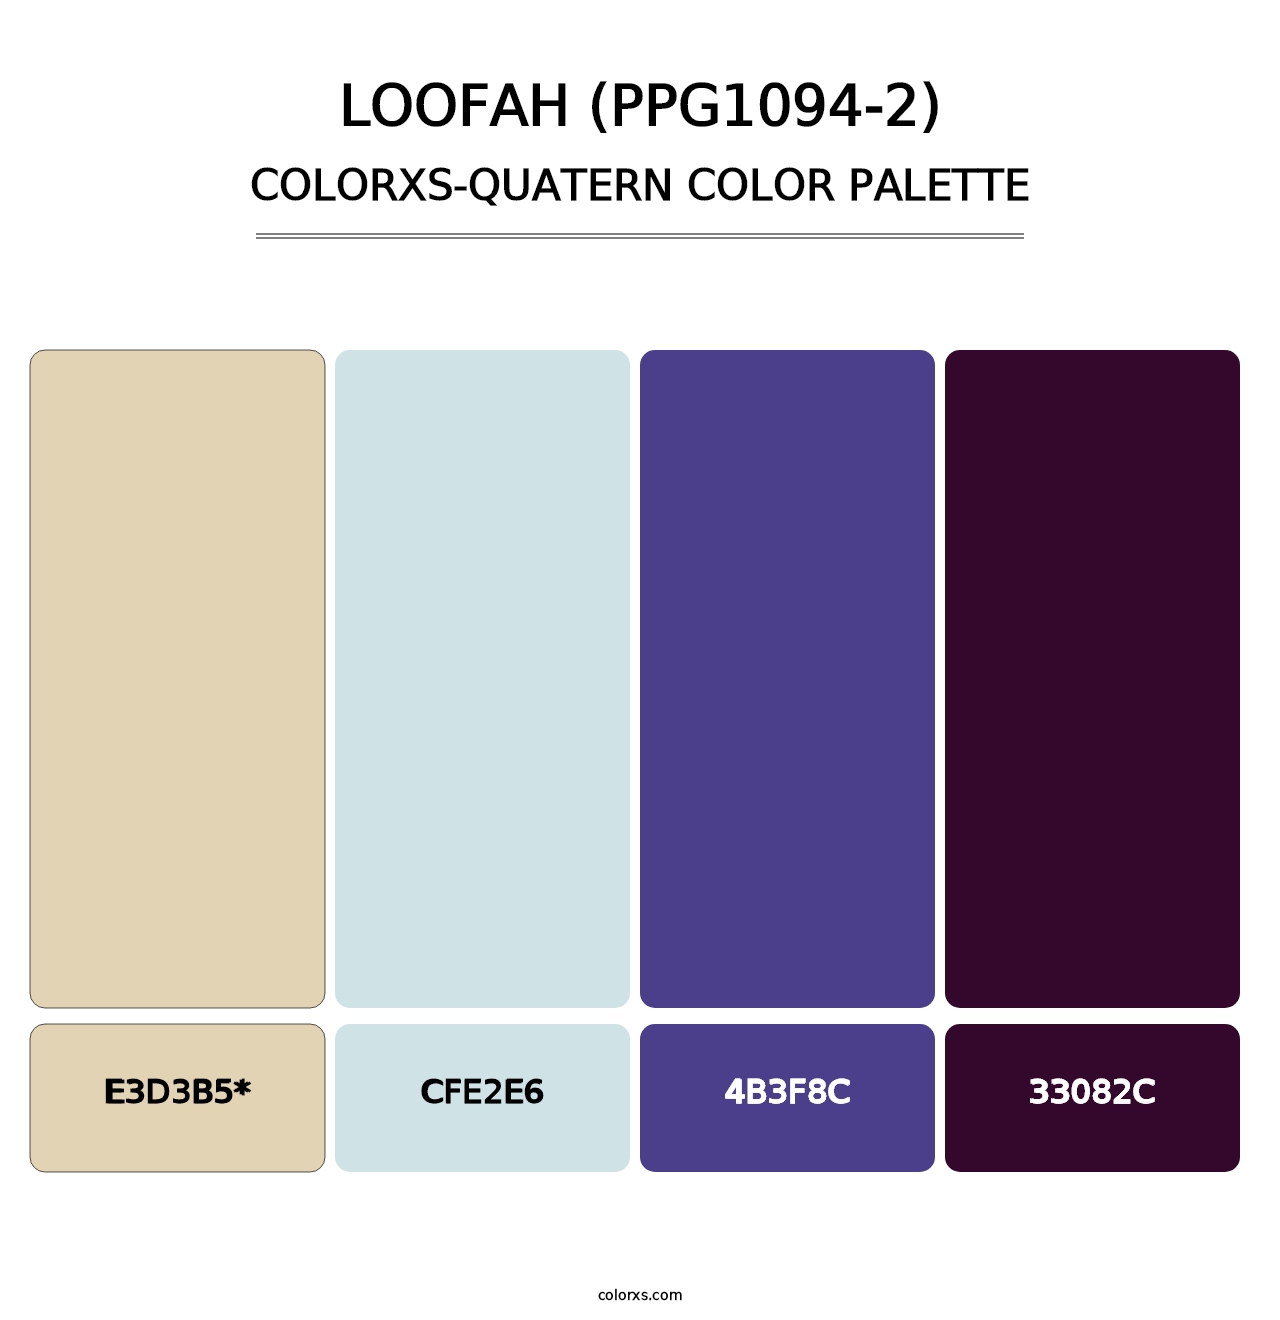 Loofah (PPG1094-2) - Colorxs Quatern Palette